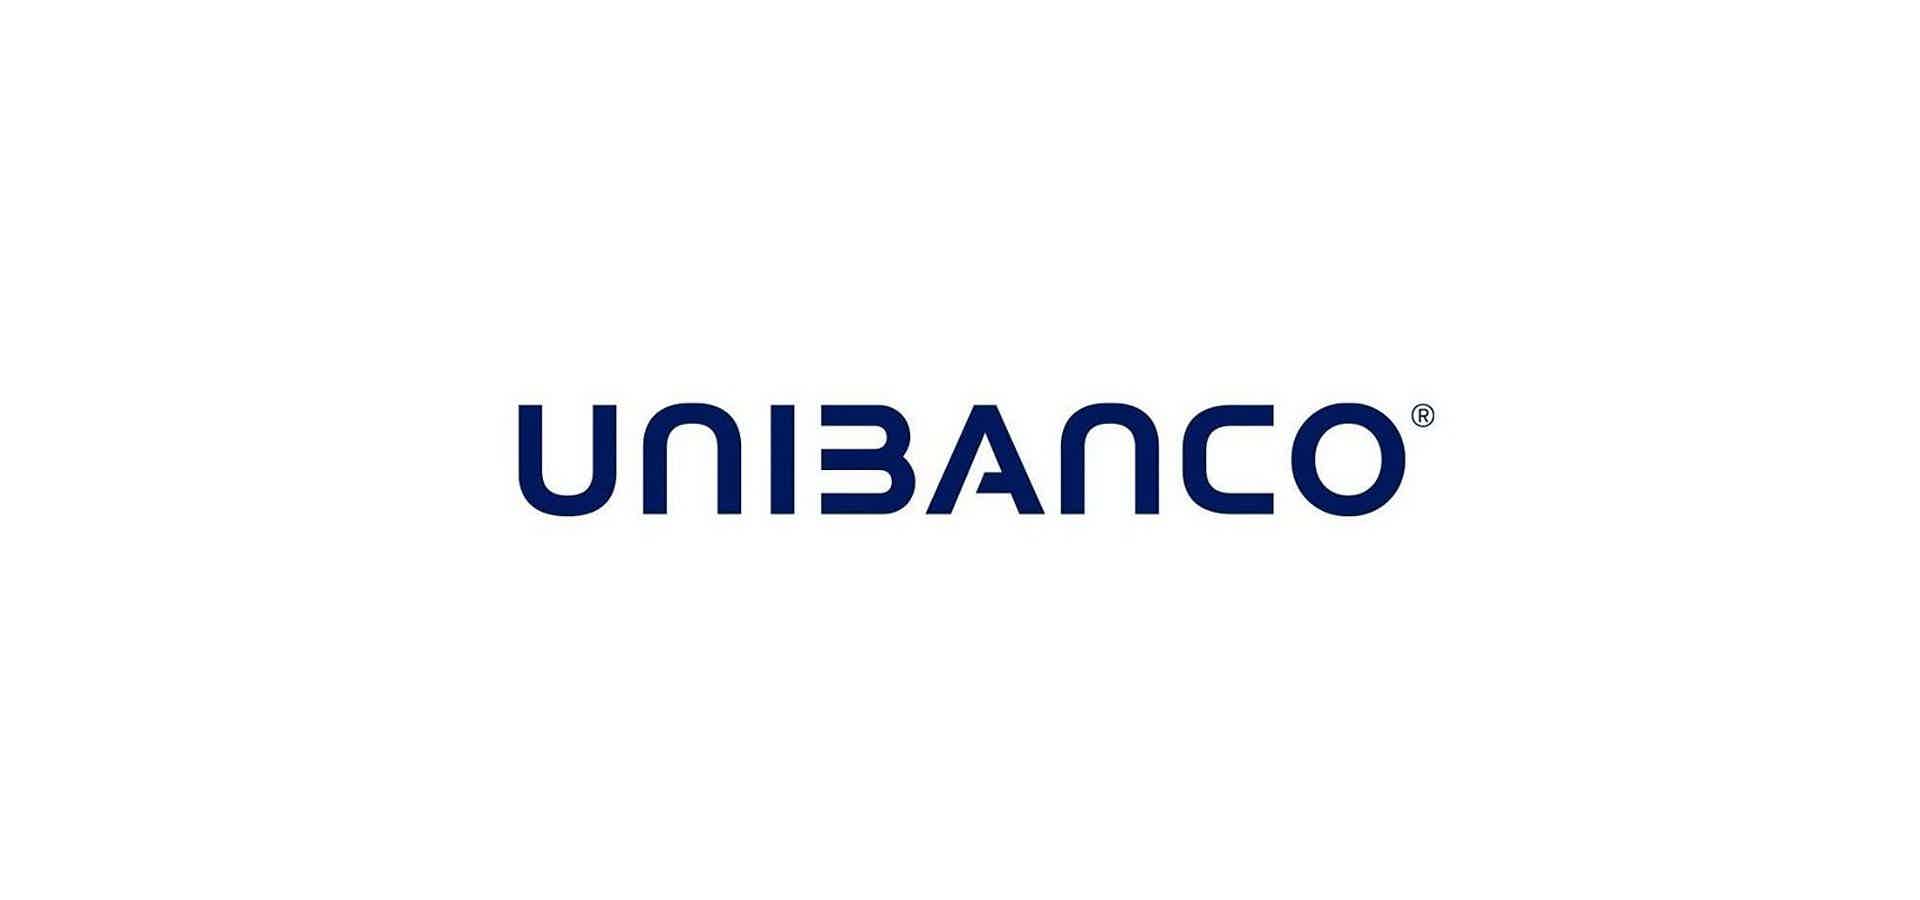 Mas, afinal, quais as características do cartão de crédito Unibanco Clássico? Fonte: Unibanco.